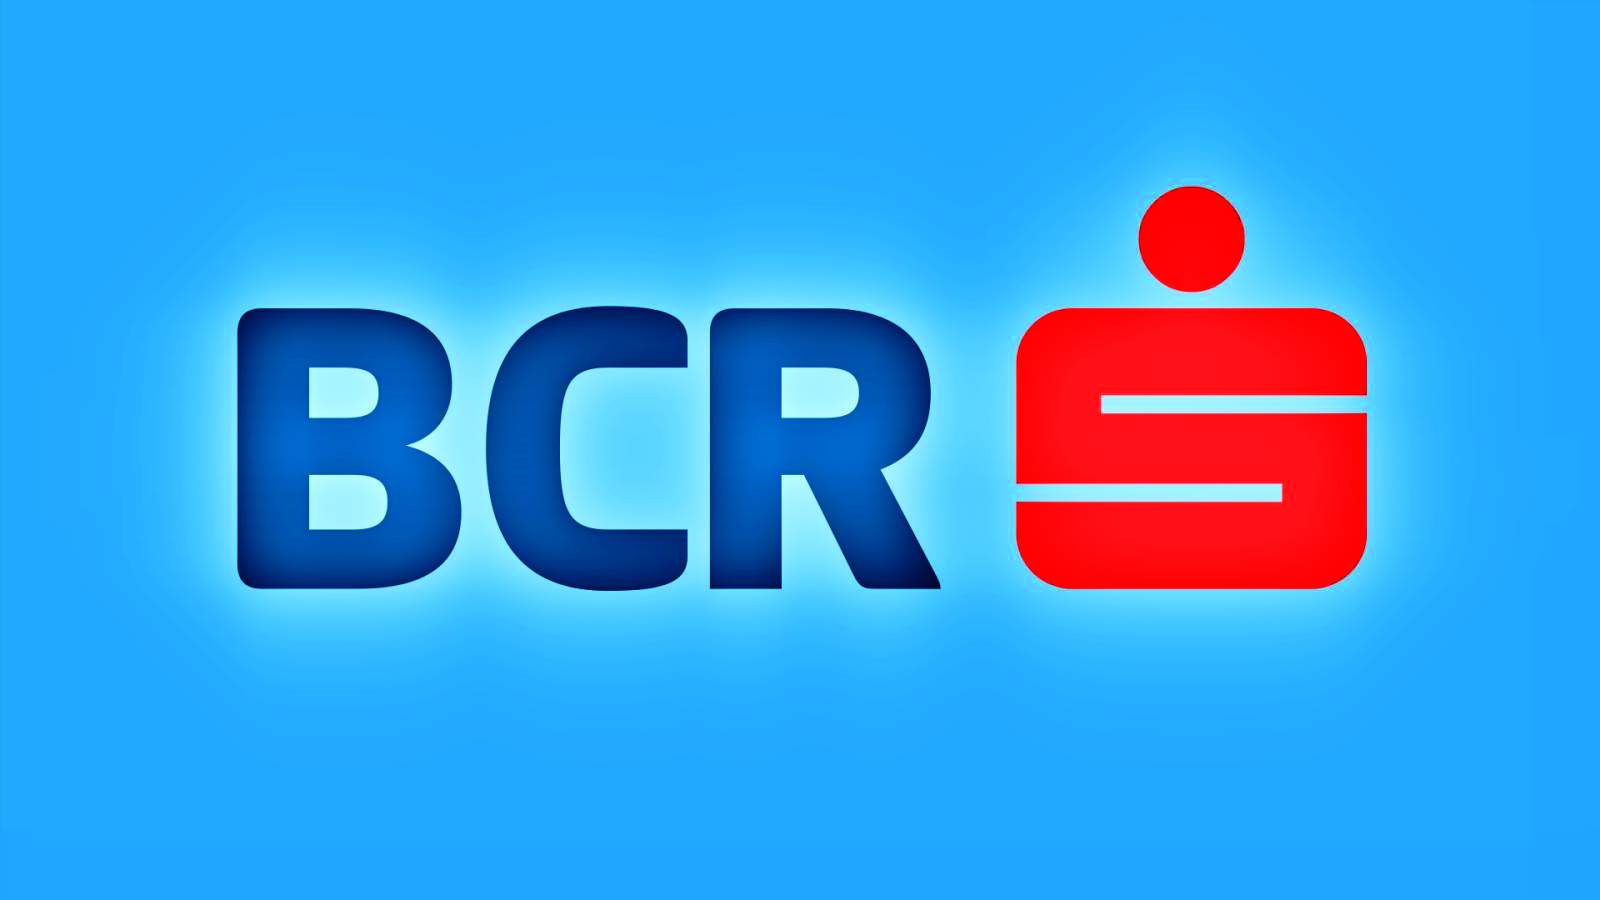 BCR Roemenië selectie